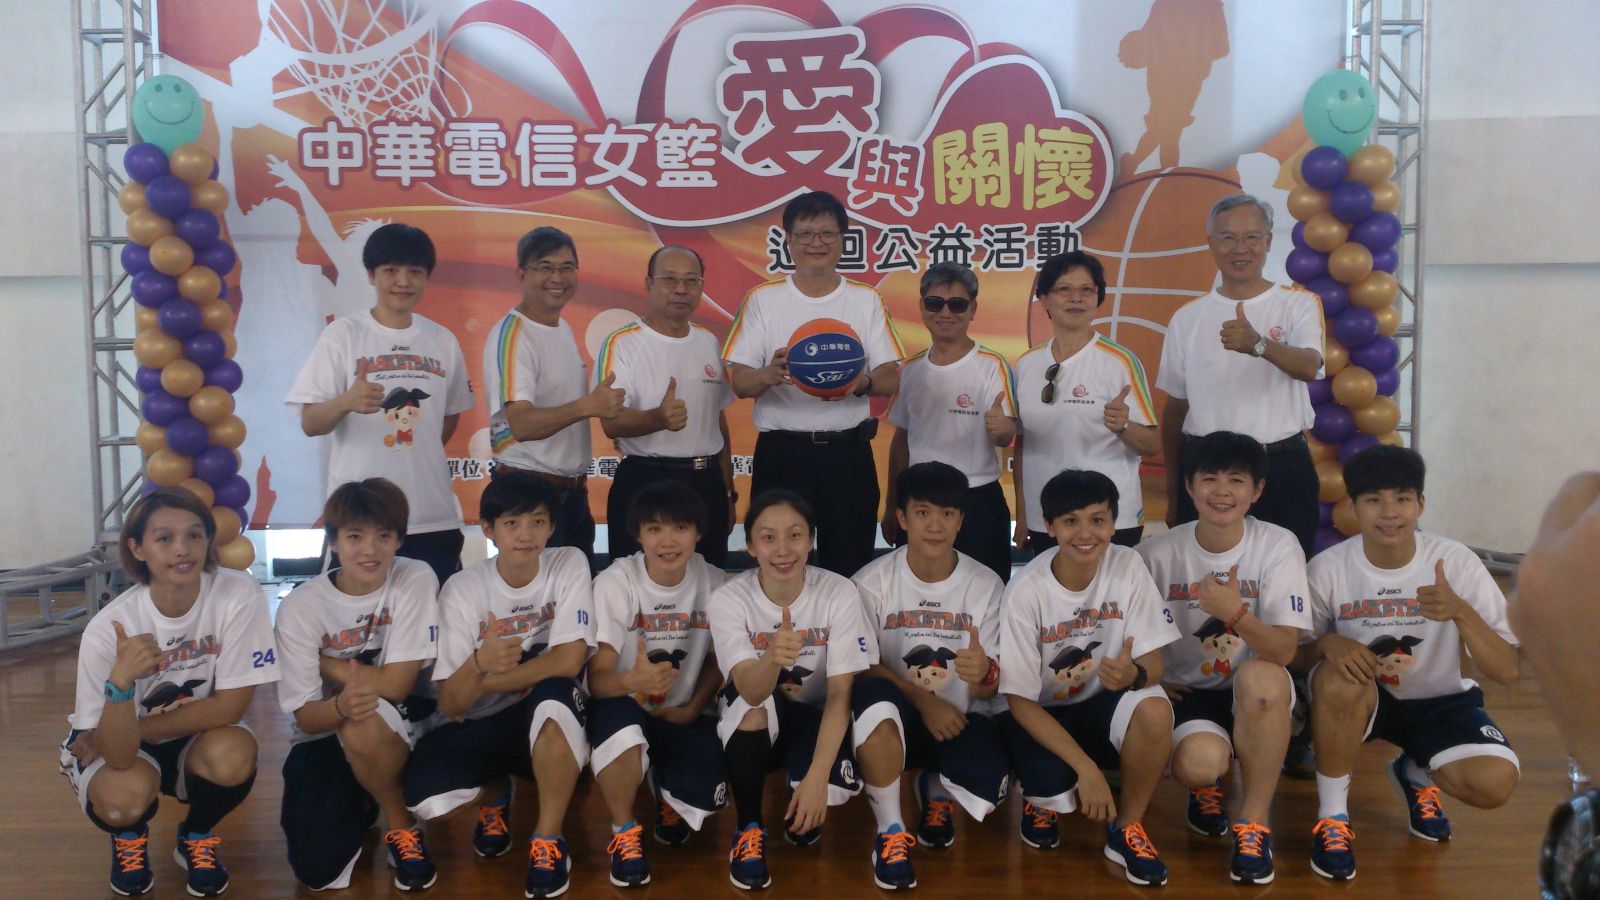 中華電信基金會董事長石木標(後排中)代表致贈籃球予澎湖縣政府